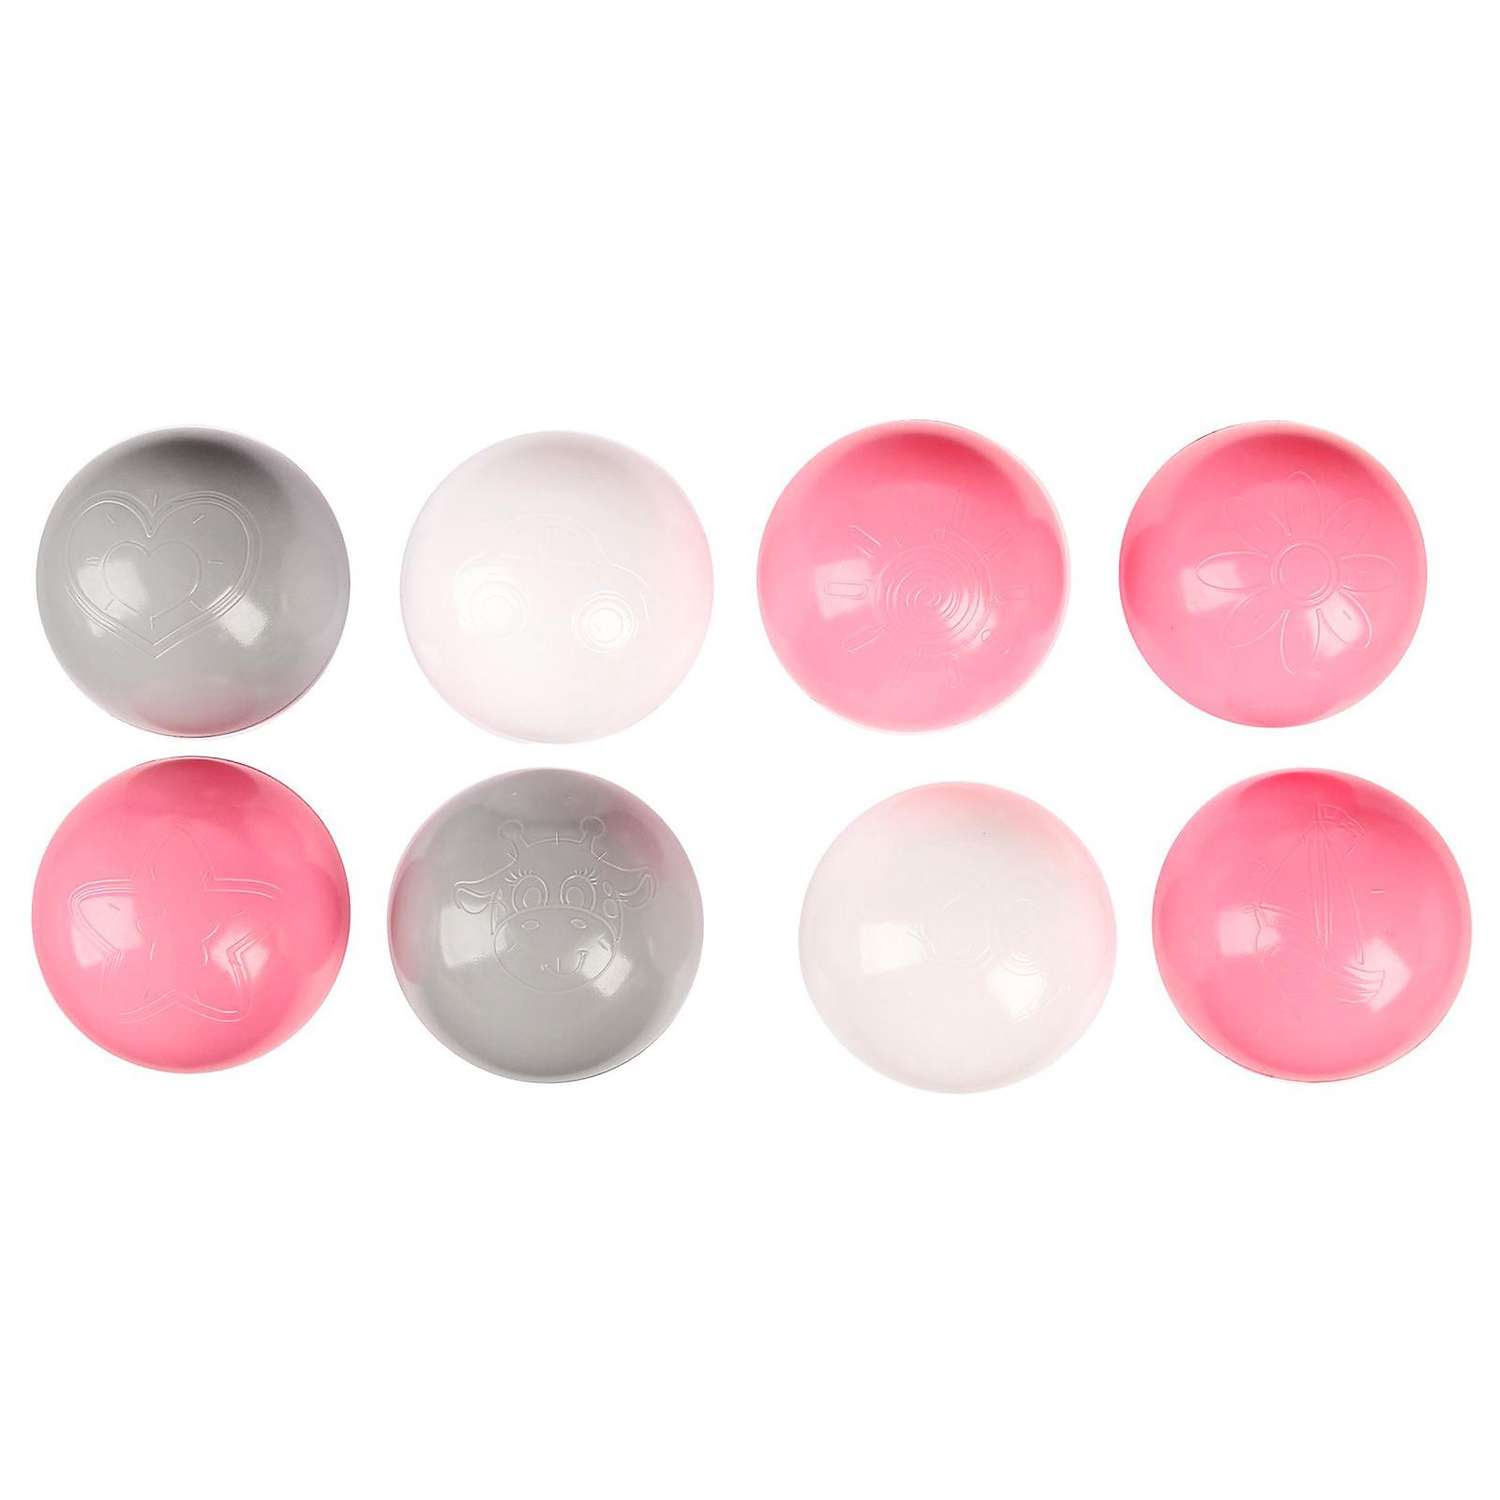 Шарики Соломон для сухого бассейна с рисунком диаметр шара 7.5 см набор 150 штук цвет розовый белый серый - фото 4